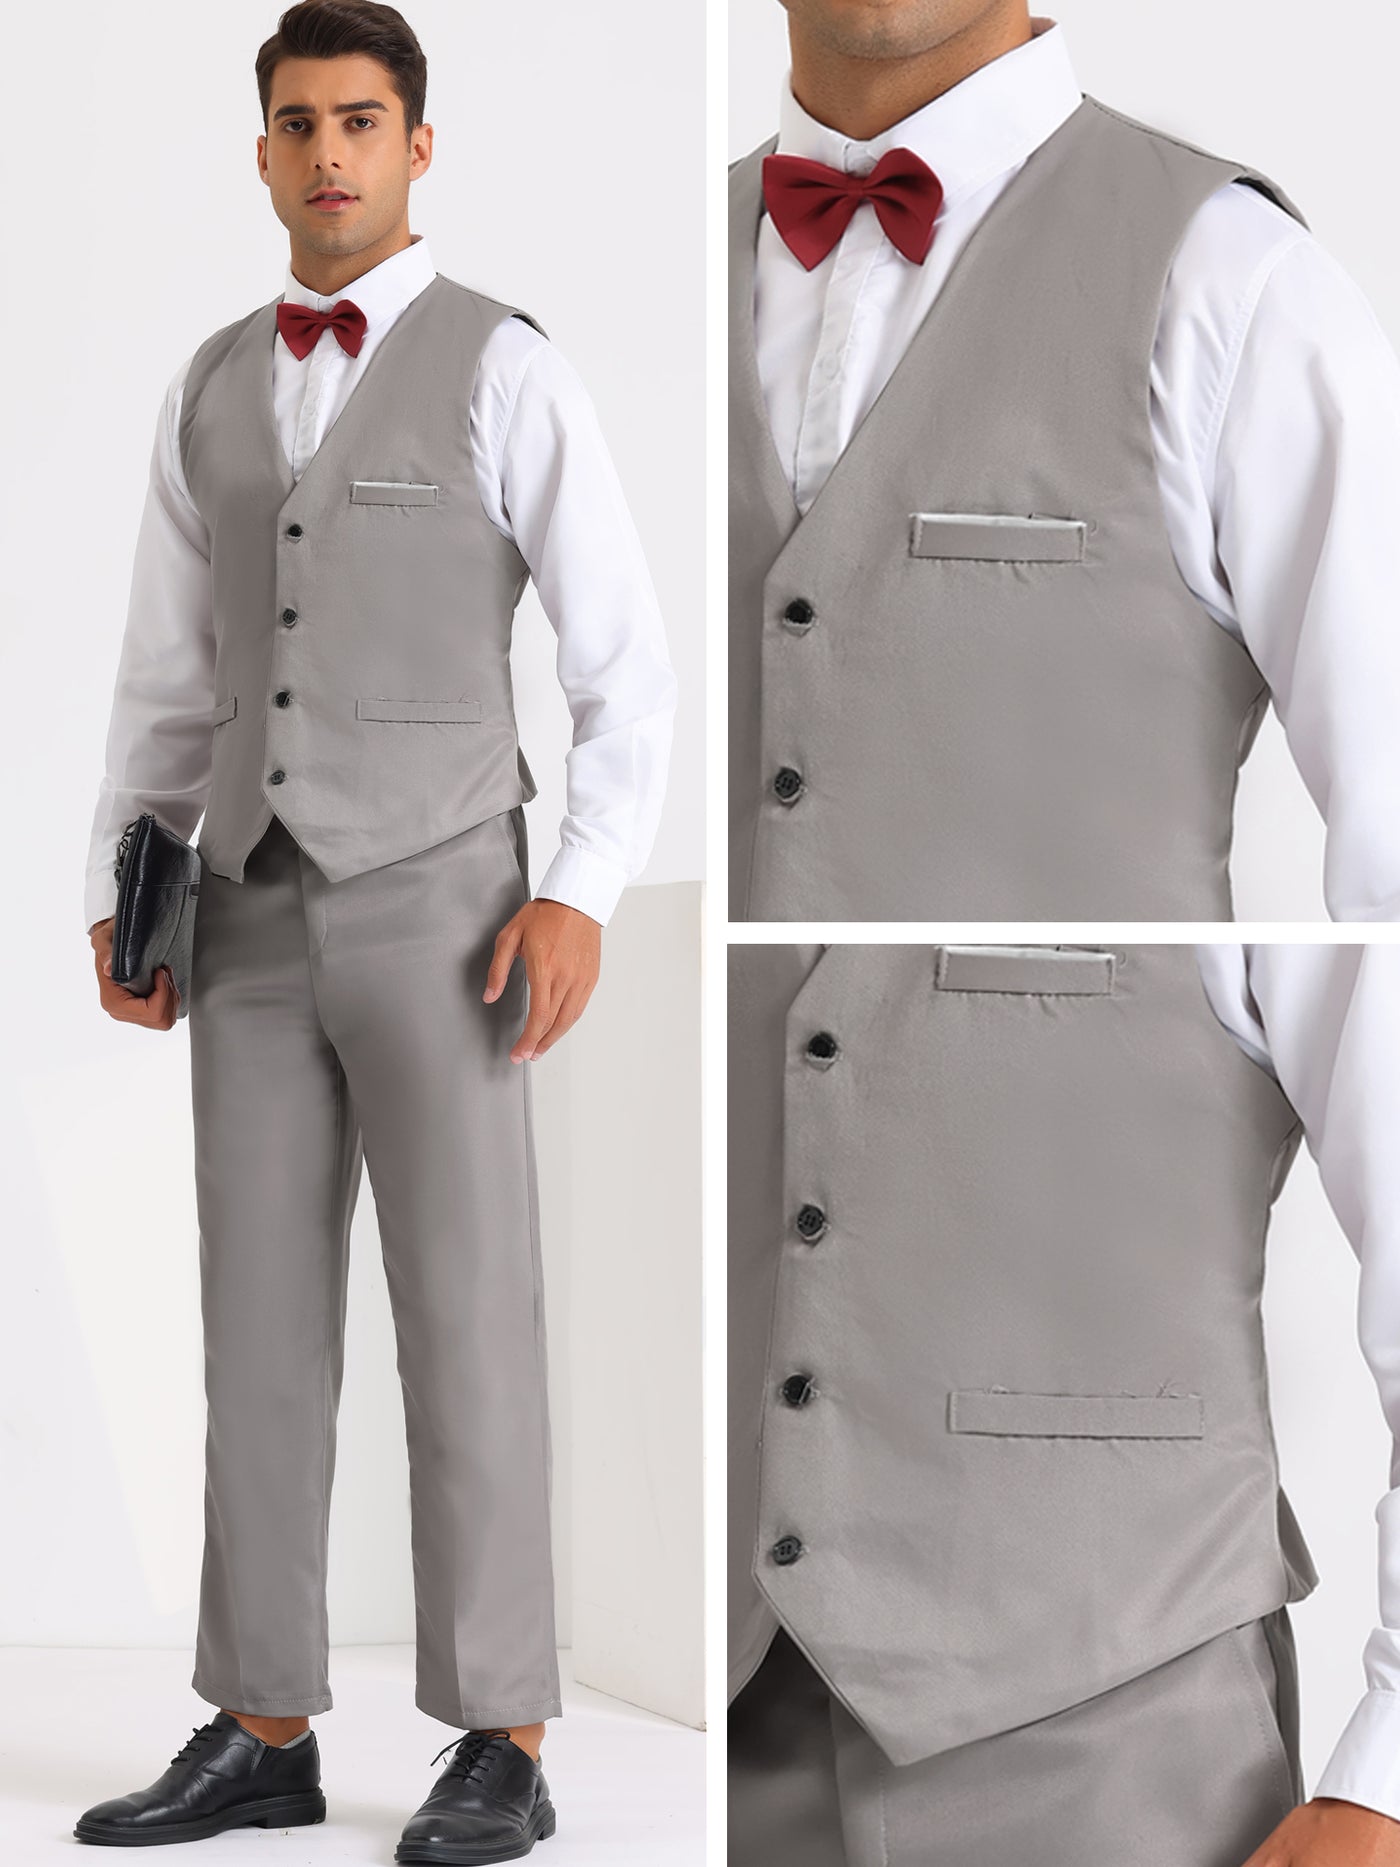 Bublédon 3 Pieces Suits for Men's Prom Wedding Business Dress Shirt Pants Waistcoat Sets